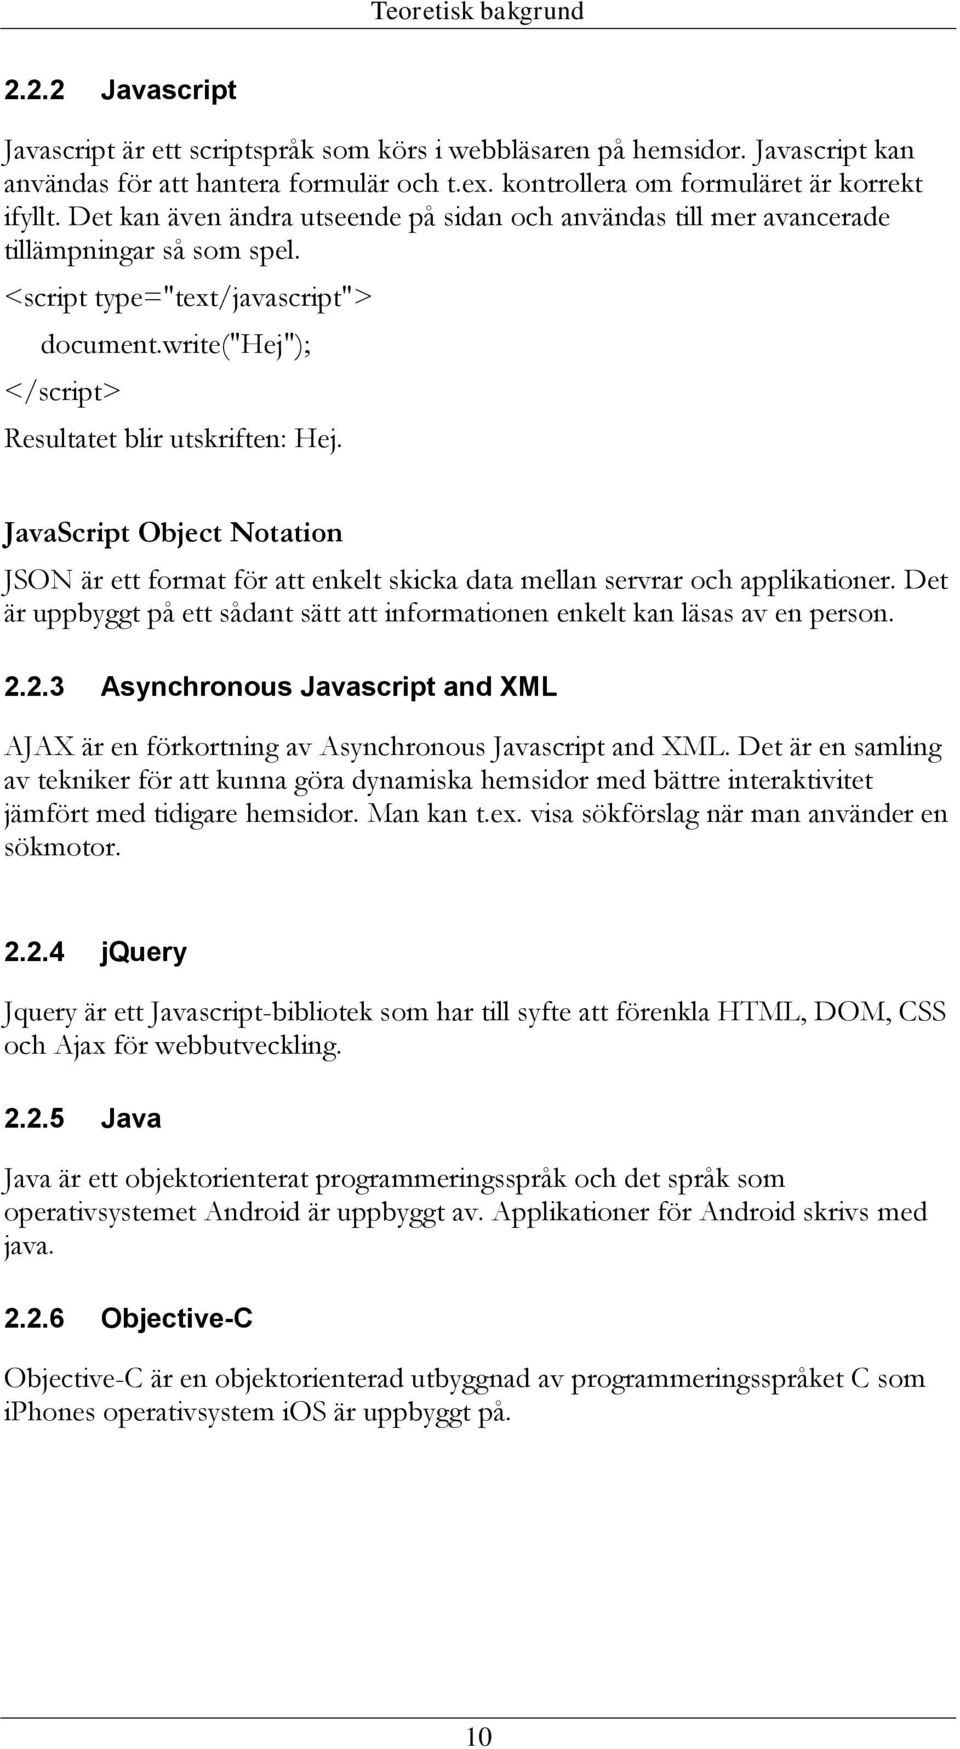 write("hej"); </script> Resultatet blir utskriften: Hej. JavaScript Object Notation JSON är ett format för att enkelt skicka data mellan servrar och applikationer.